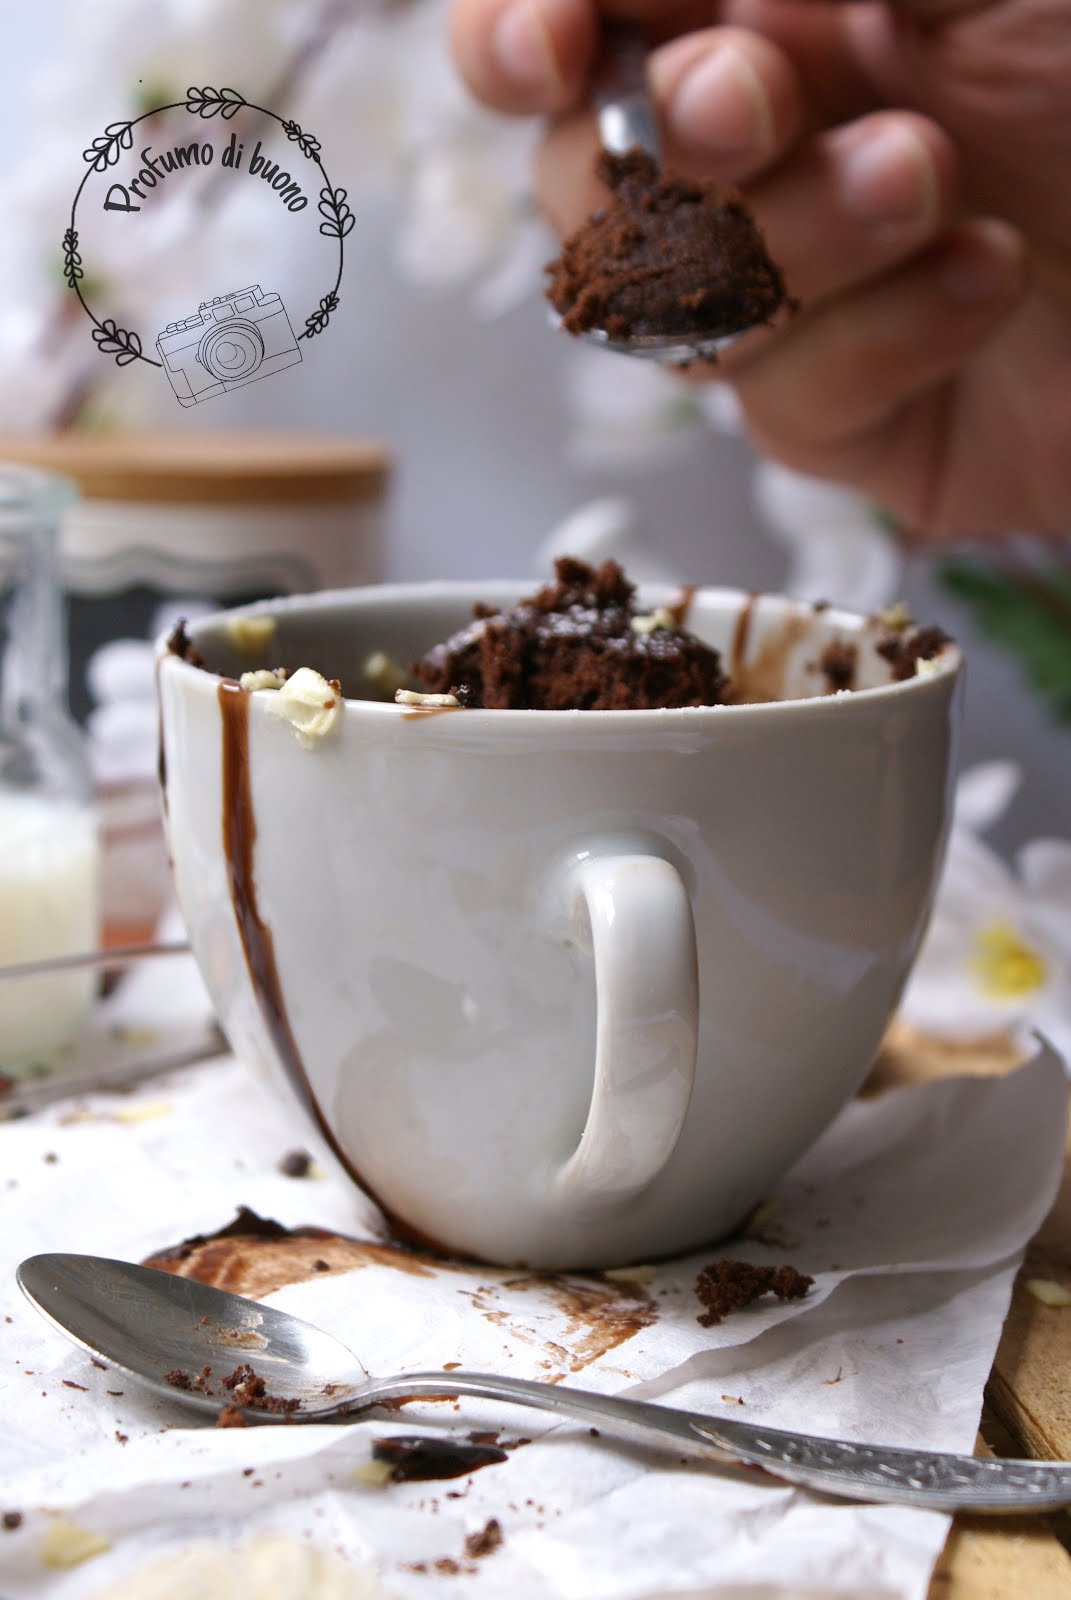 Mug Cake o torta in tazza senza glutine al cioccolato, con cioccolato fuso, zucchero a velo e scaglie di cioccolato bianco in superficie 